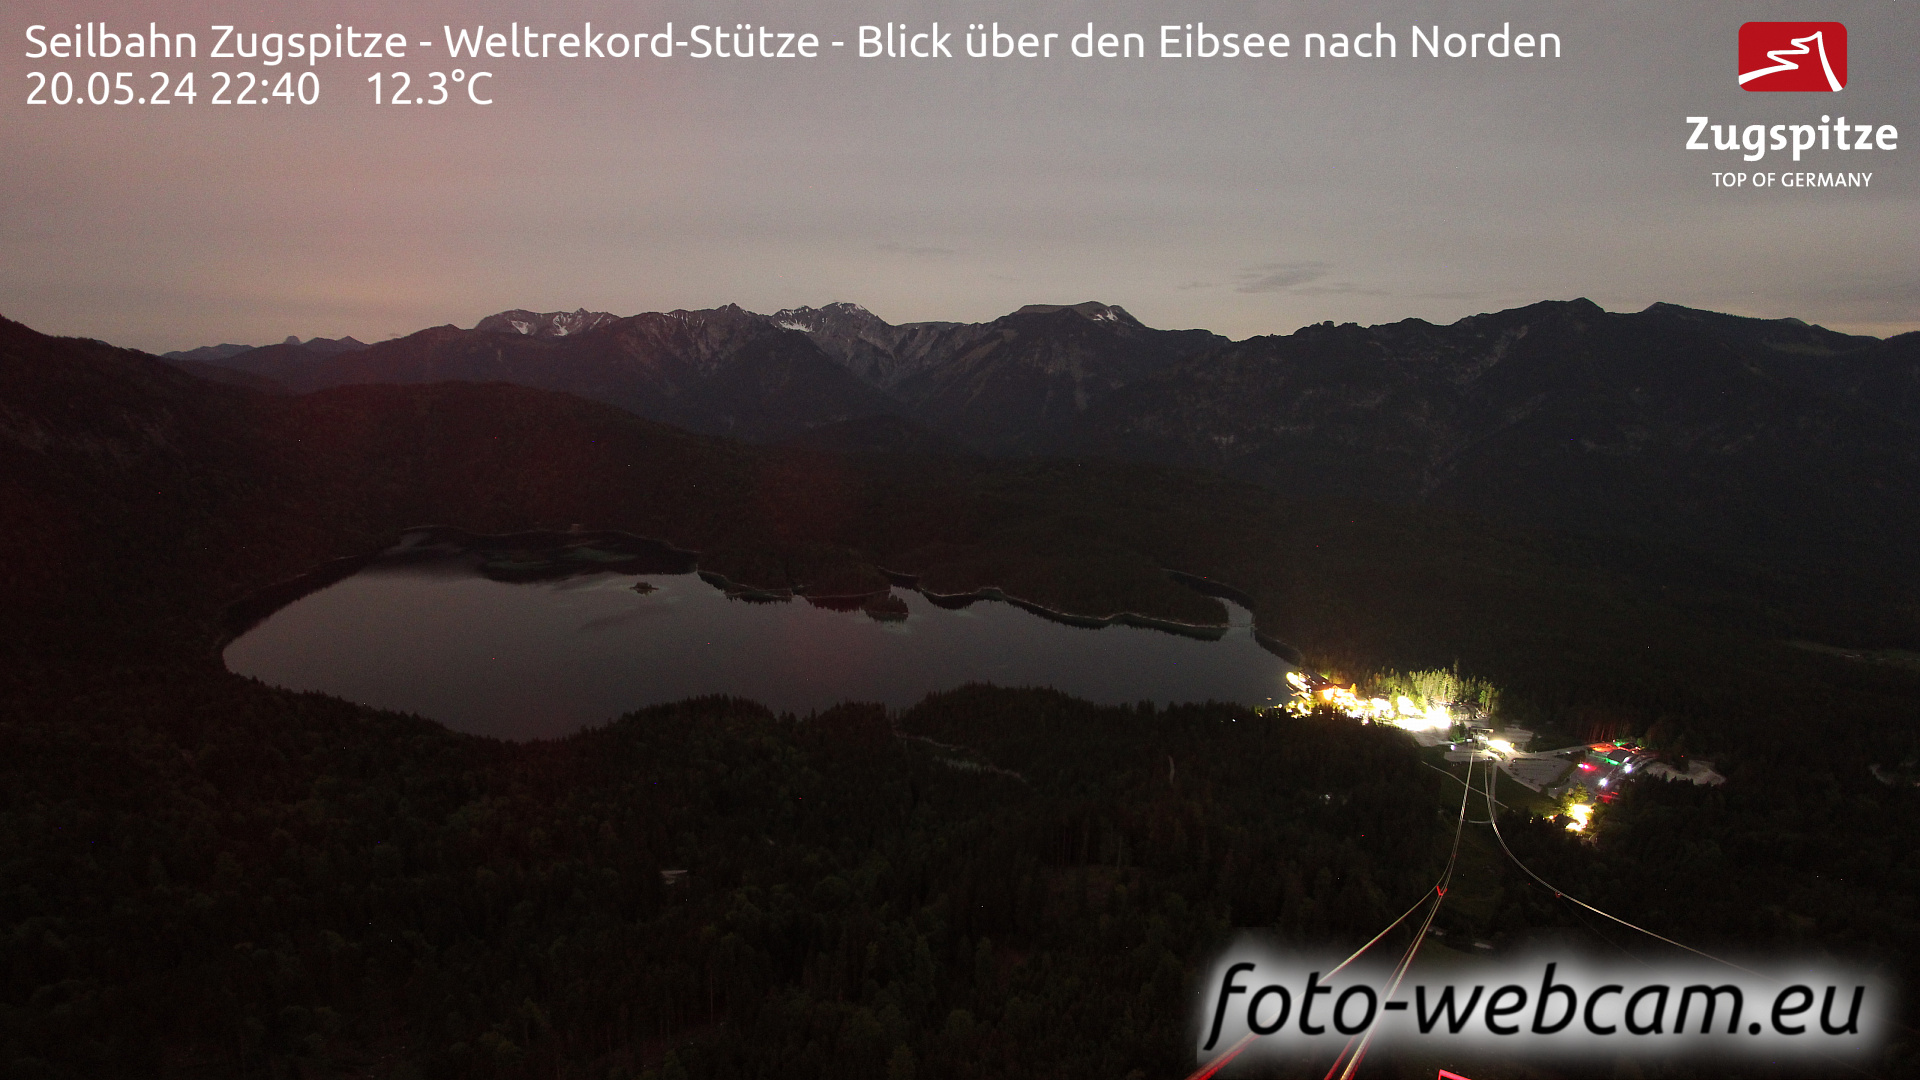 Zugspitze So. 22:49